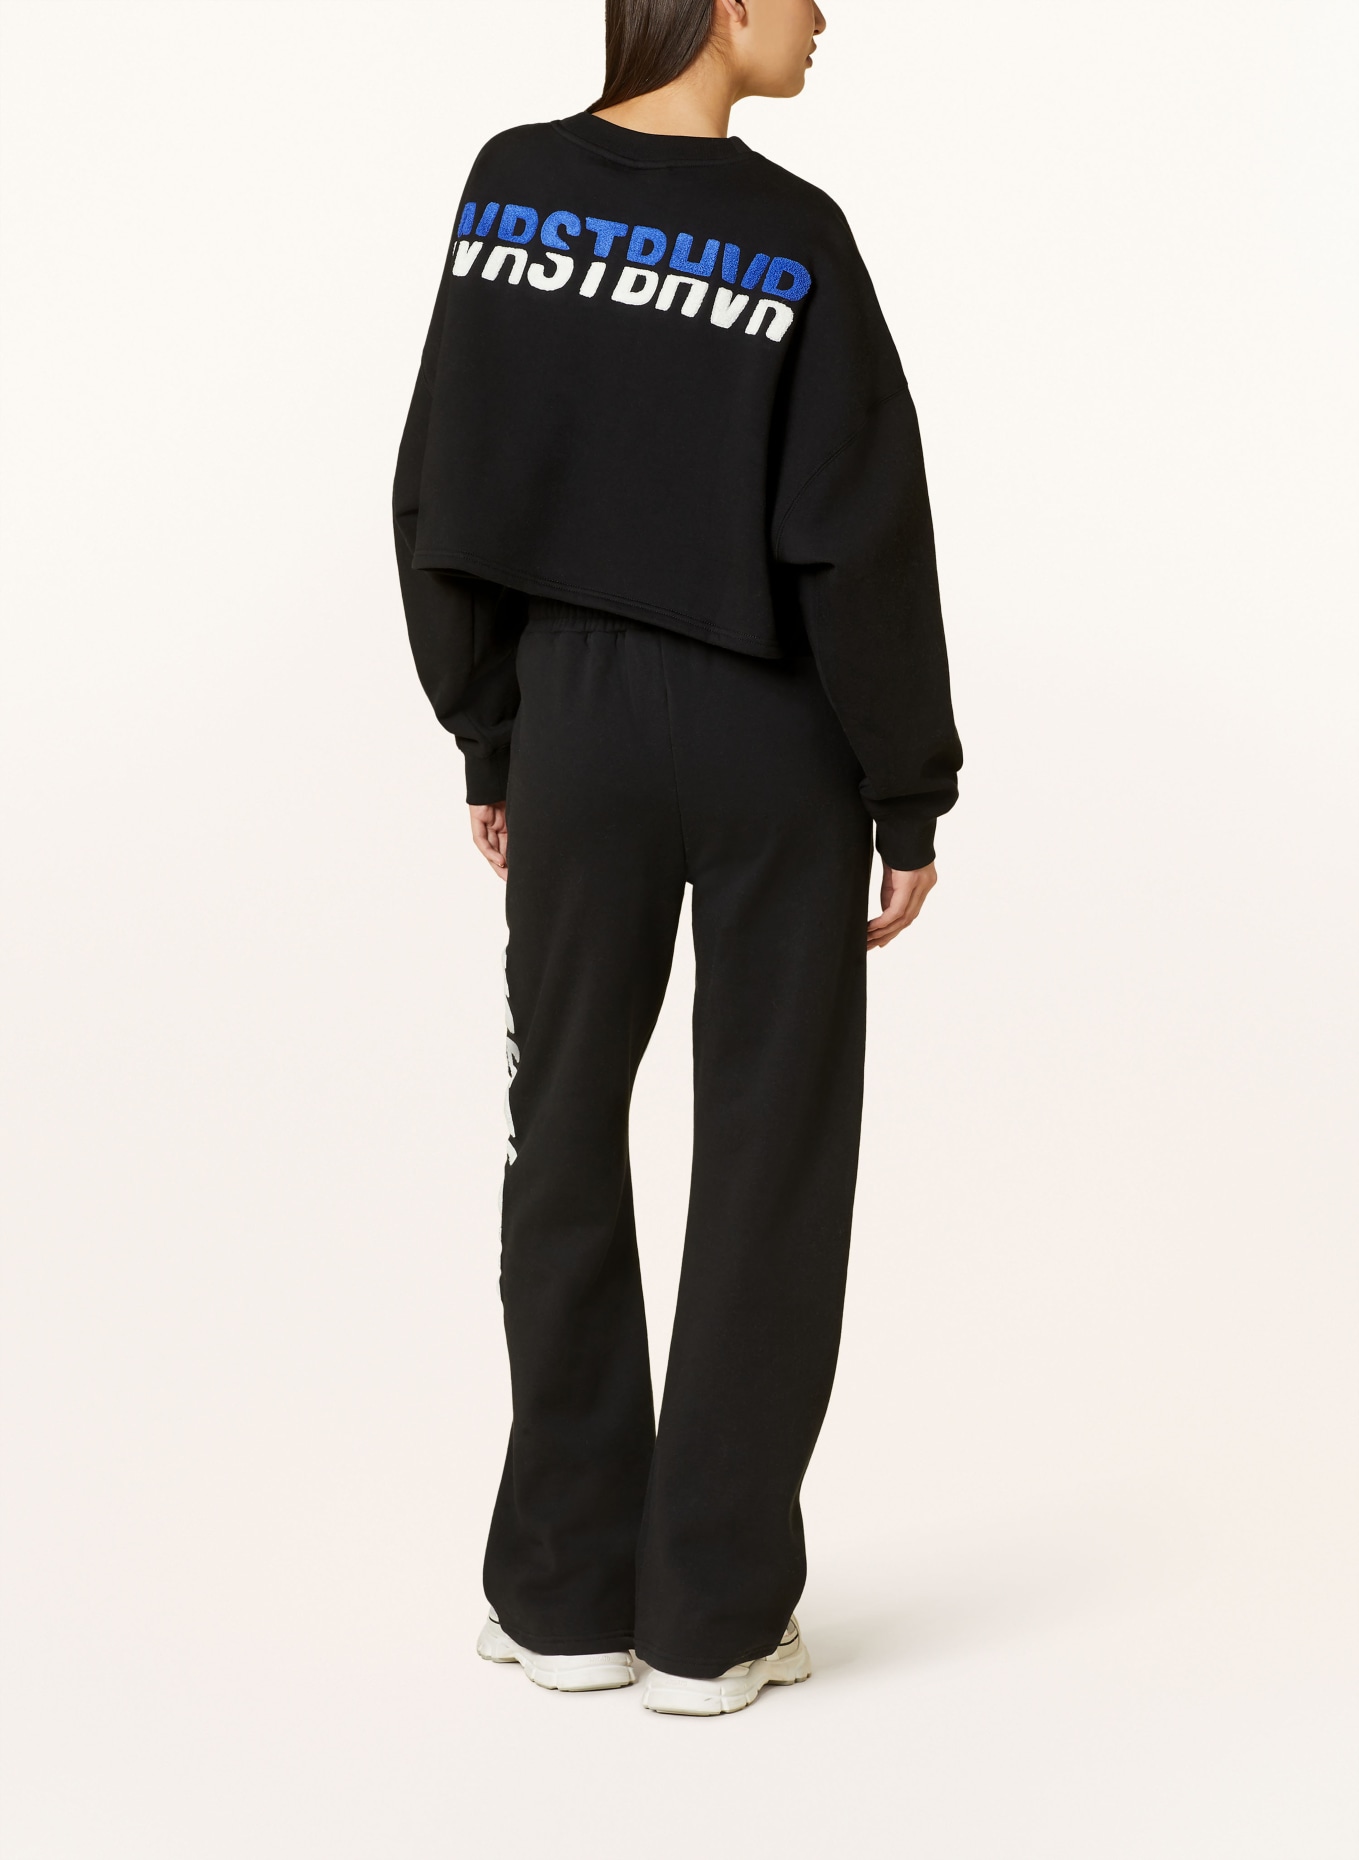 WRSTBHVR Cropped sweatshirt SLATA, Color: BLACK (Image 2)